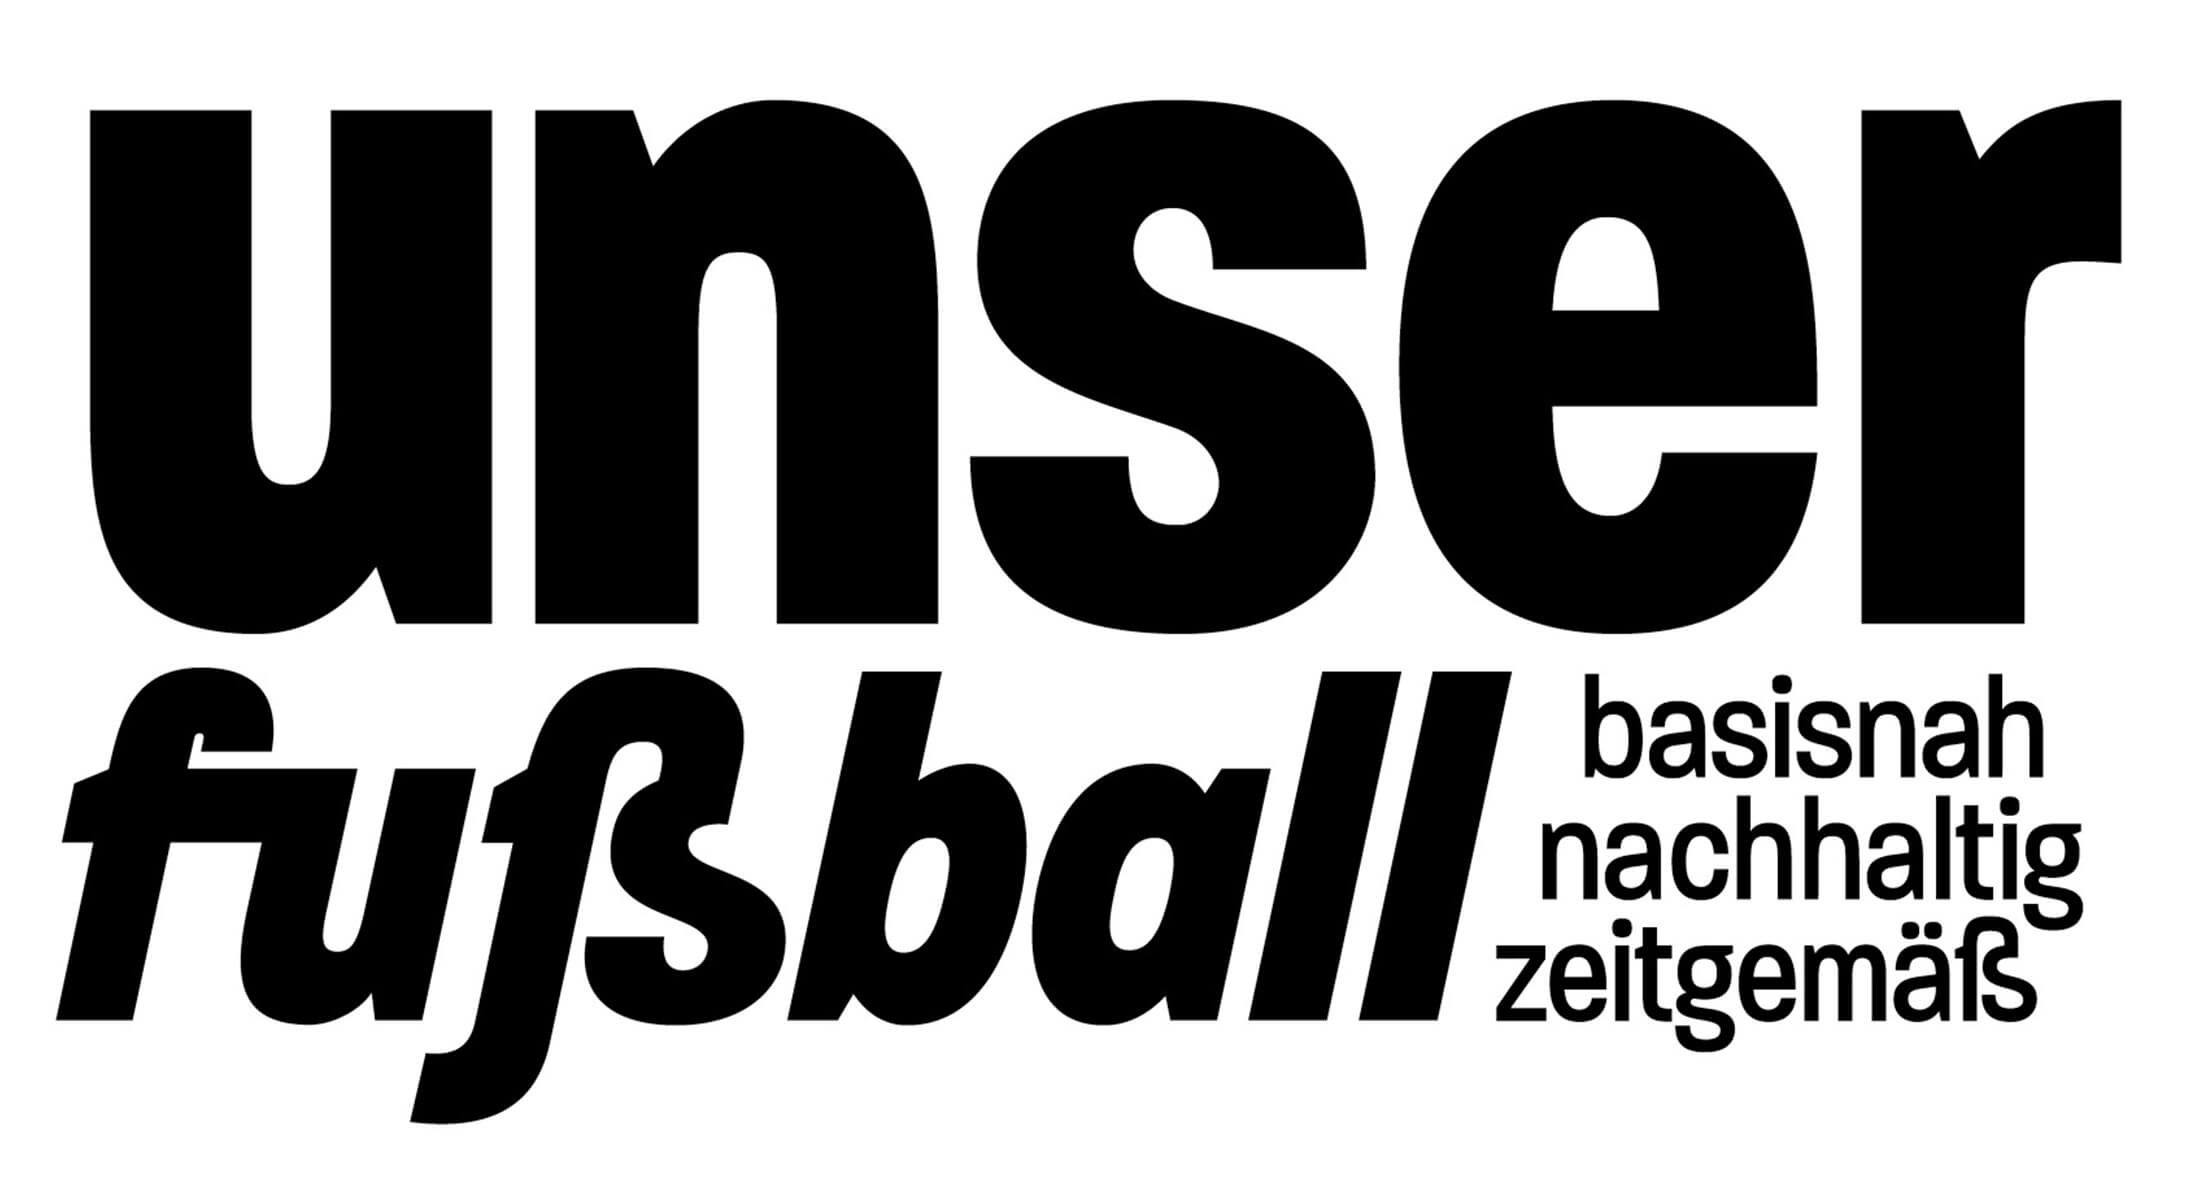 Unser Fussball - basisnah, nachhaltig und zukunftsfähig - Unser Fussball